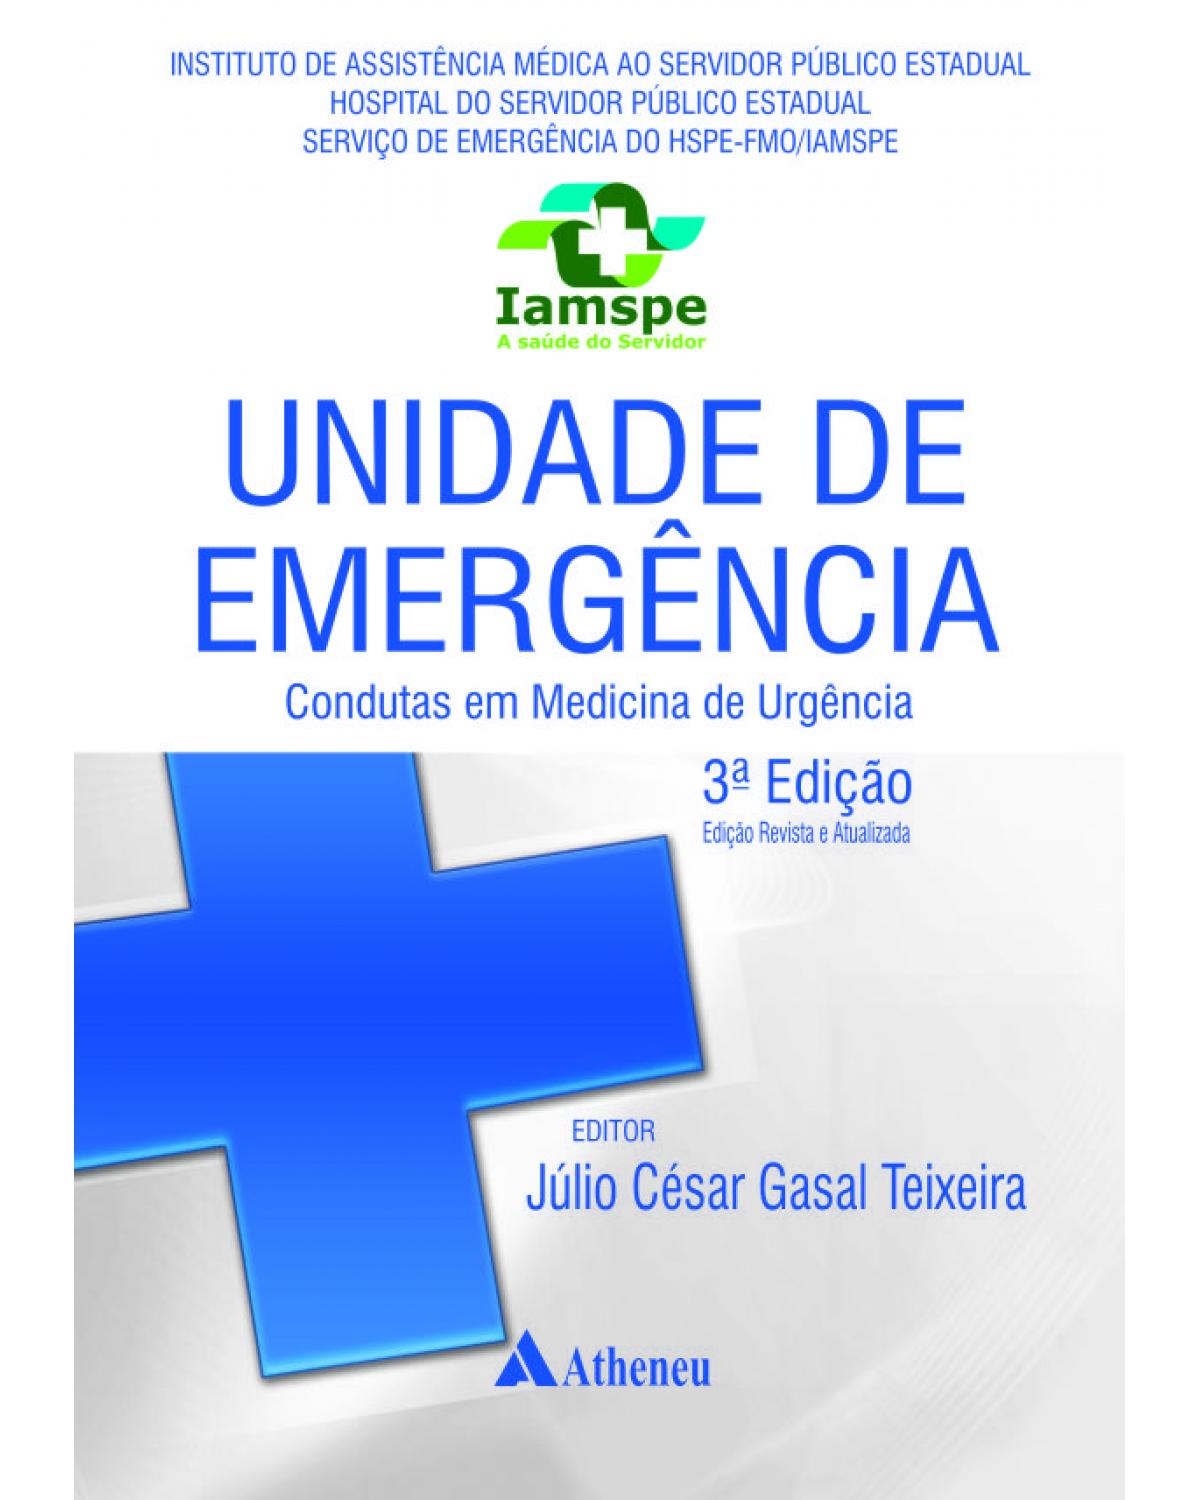 Unidade de emergência - condutas em medicina de urgência - 3ª Edição | 2013